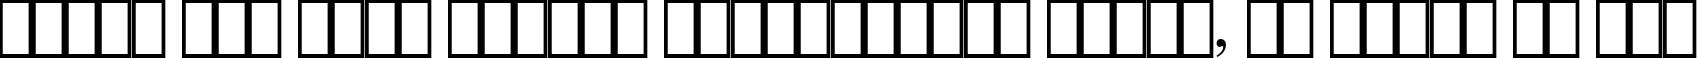 Пример написания шрифтом SymbolPS текста на русском